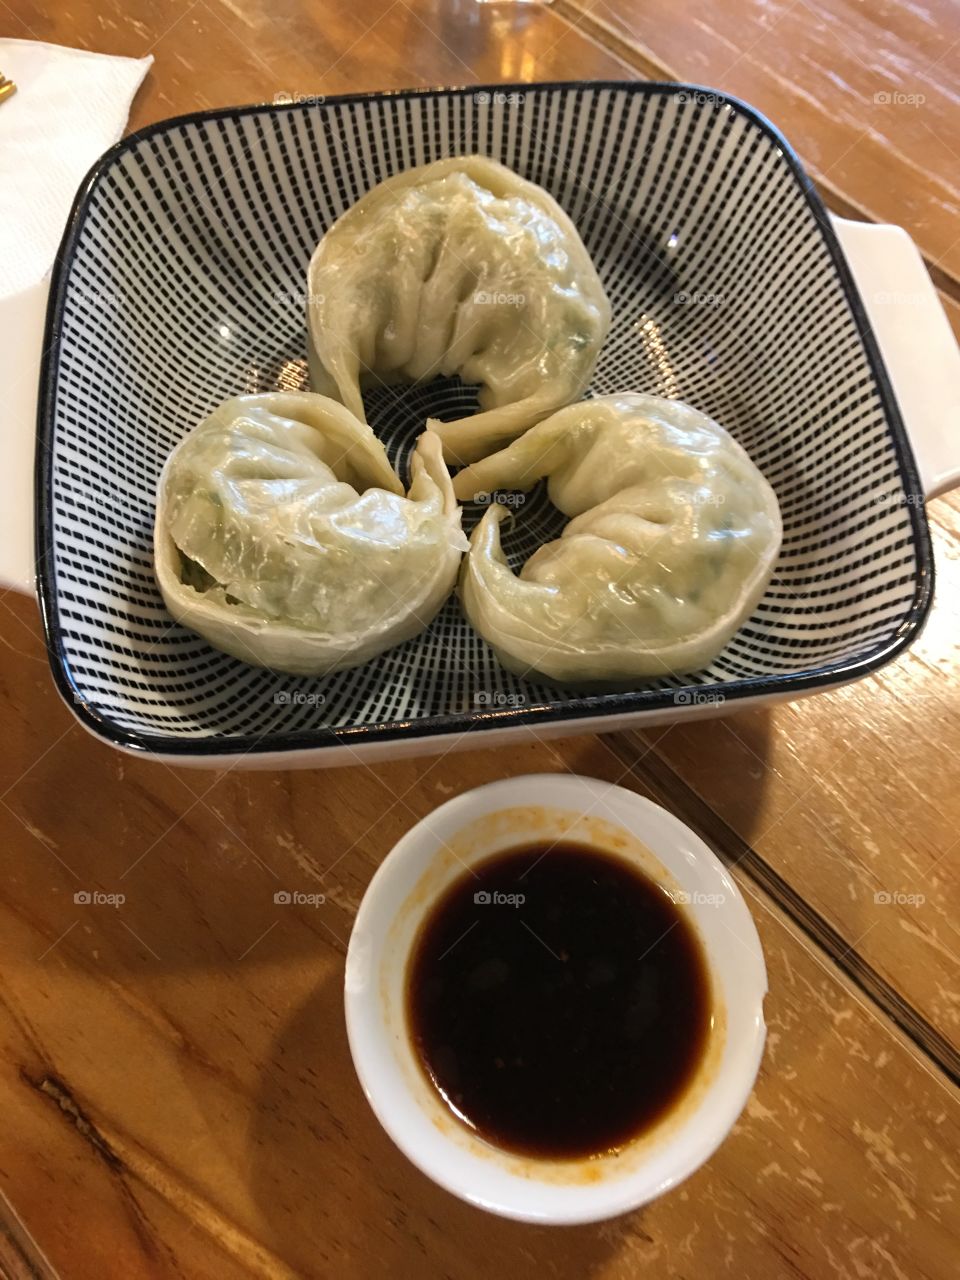 Korean dumplings